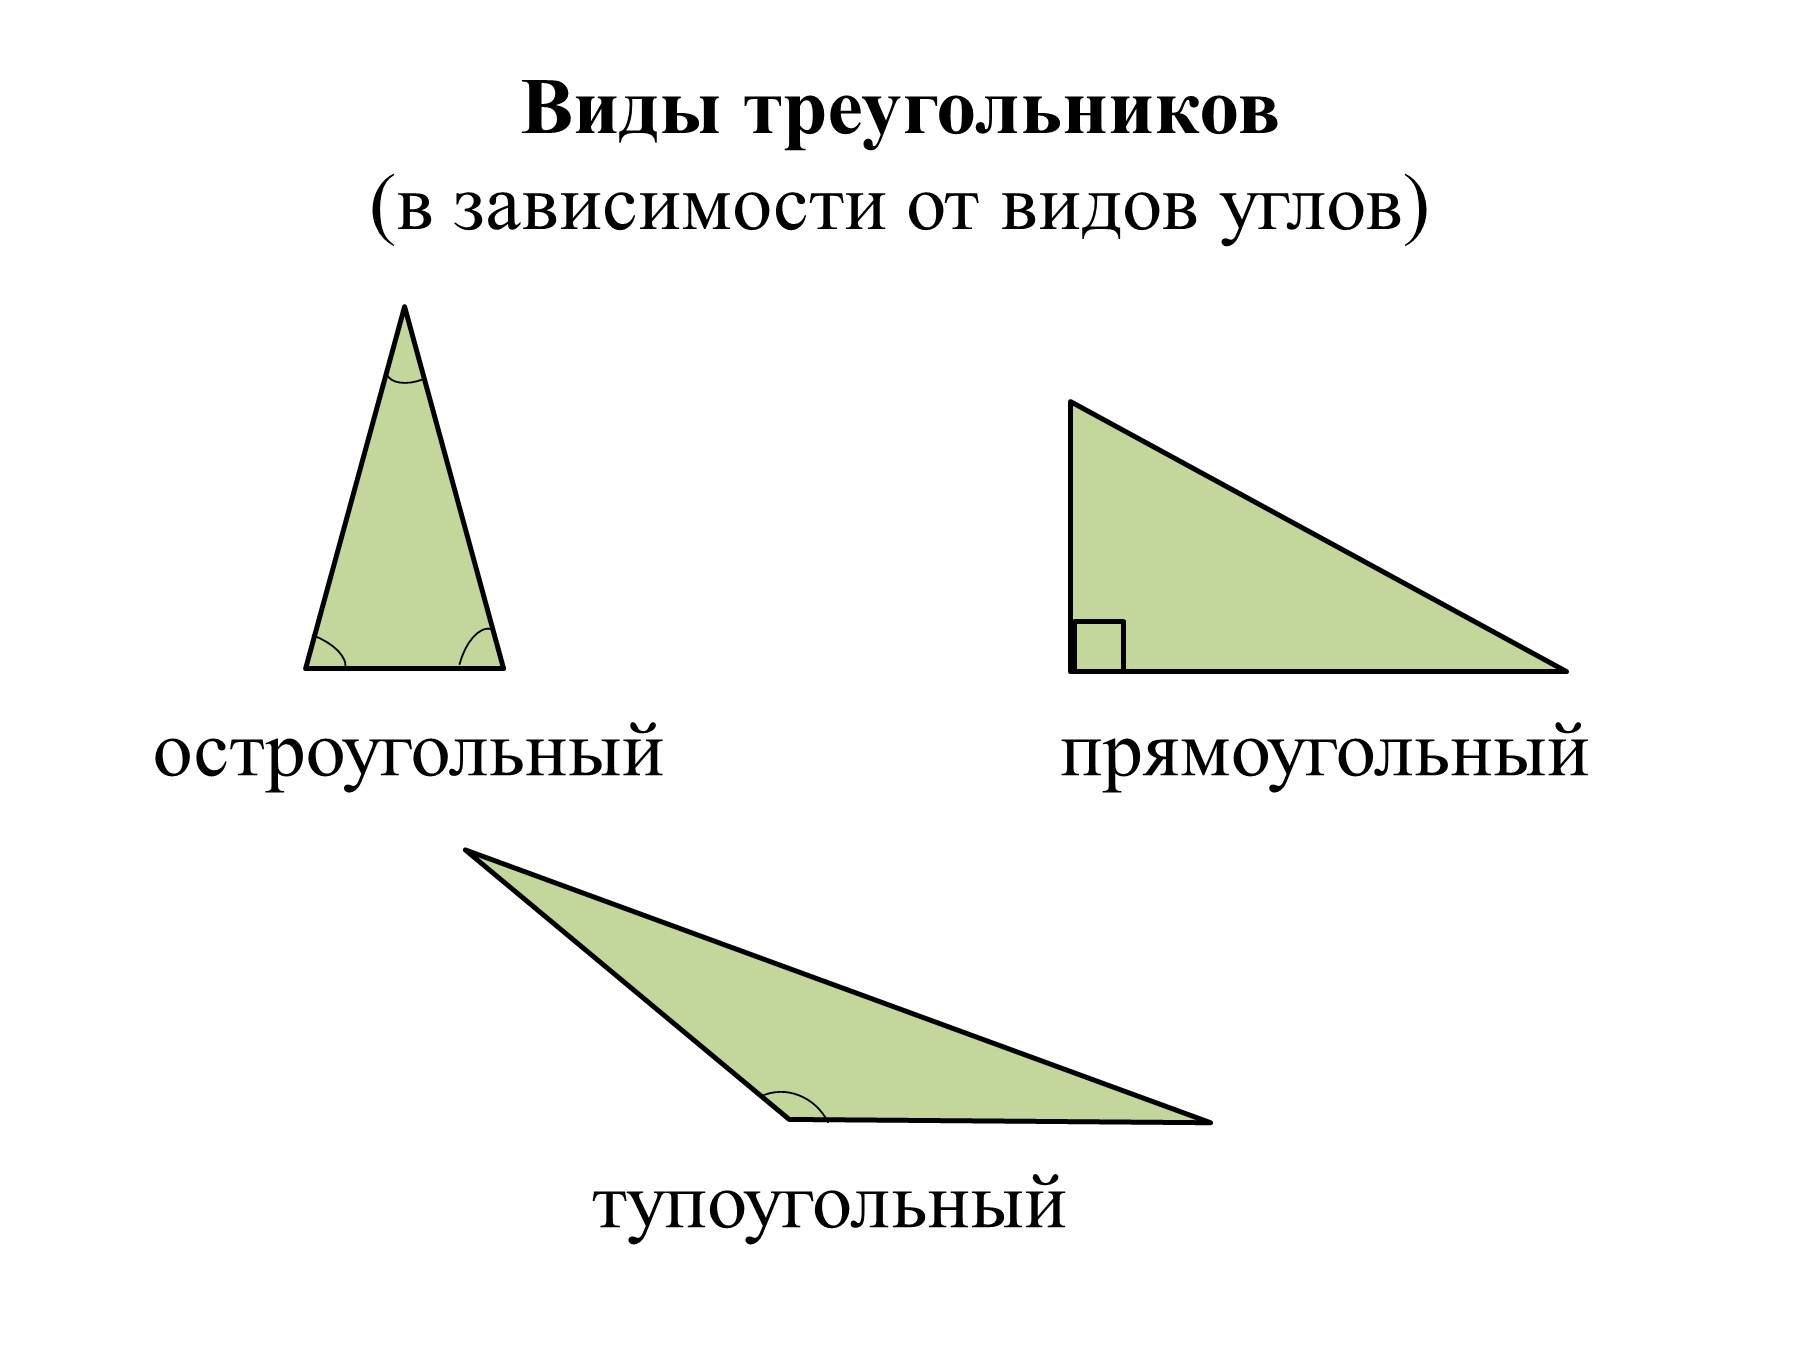 Каждый равносторонний треугольник является остроугольным. Треугольники виды треугольников по углам. Виды треугольников в зависимости от углов и от сторон. Остро́угольные пря́мо́угольные и тупоугольные треугольники. Остроугольный прямоугольный и тупоугольный треугольники.